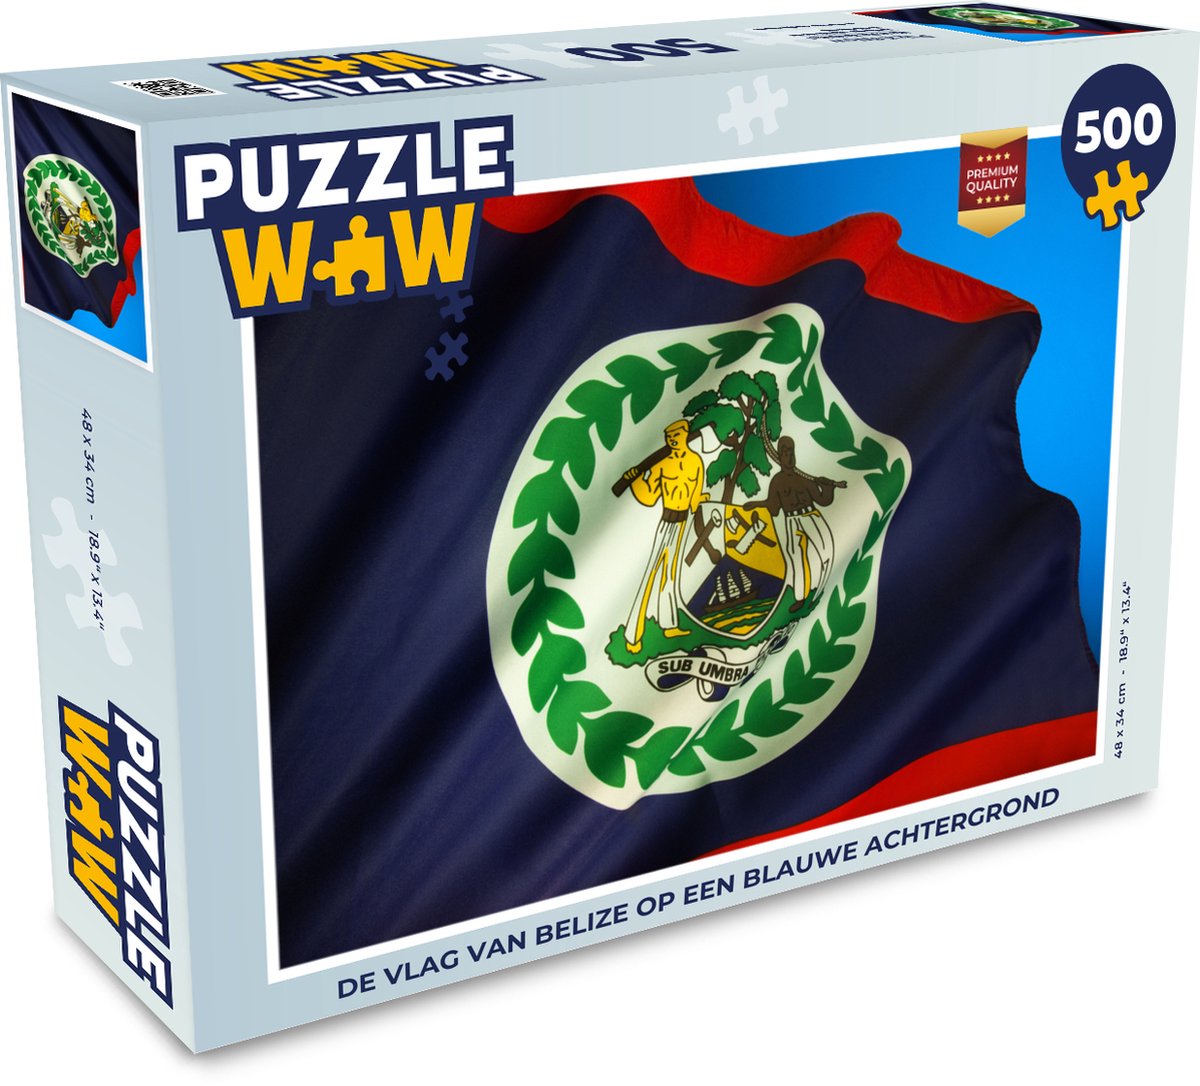 Afbeelding van product Puzzel 500 stukjes Vlag Belize - De vlag van Belize op een blauwe achtergrond - PuzzleWow heeft +100000 puzzels